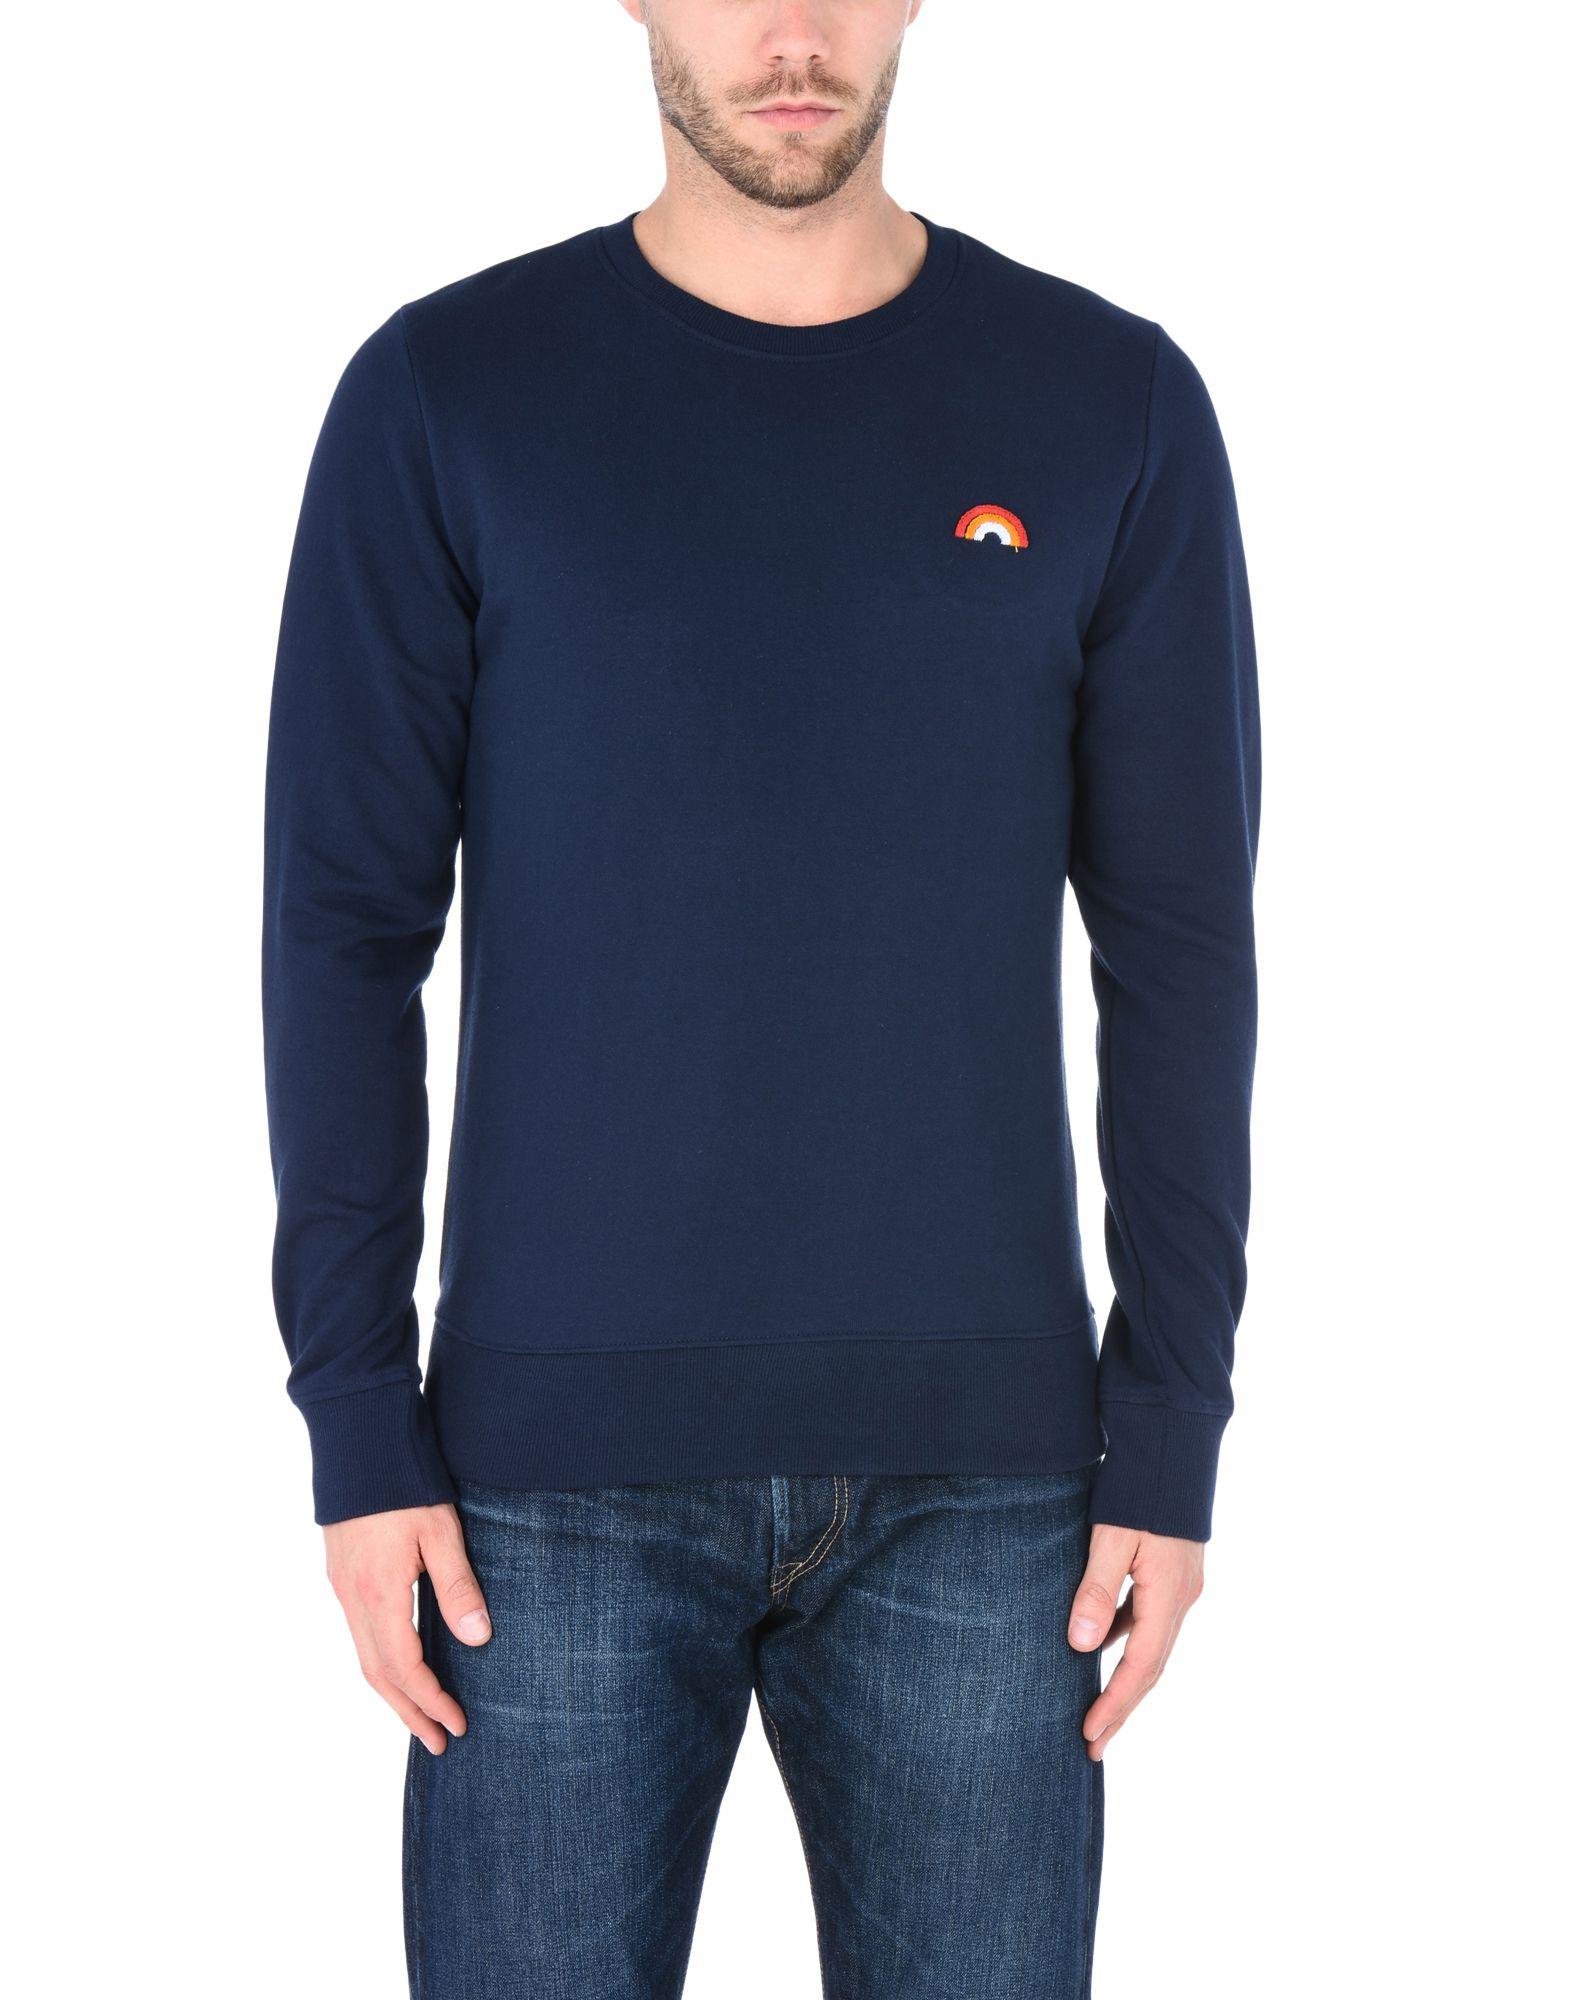 RVLT Fleece Sweatshirt in Dark Blue (Blue) for Men - Lyst